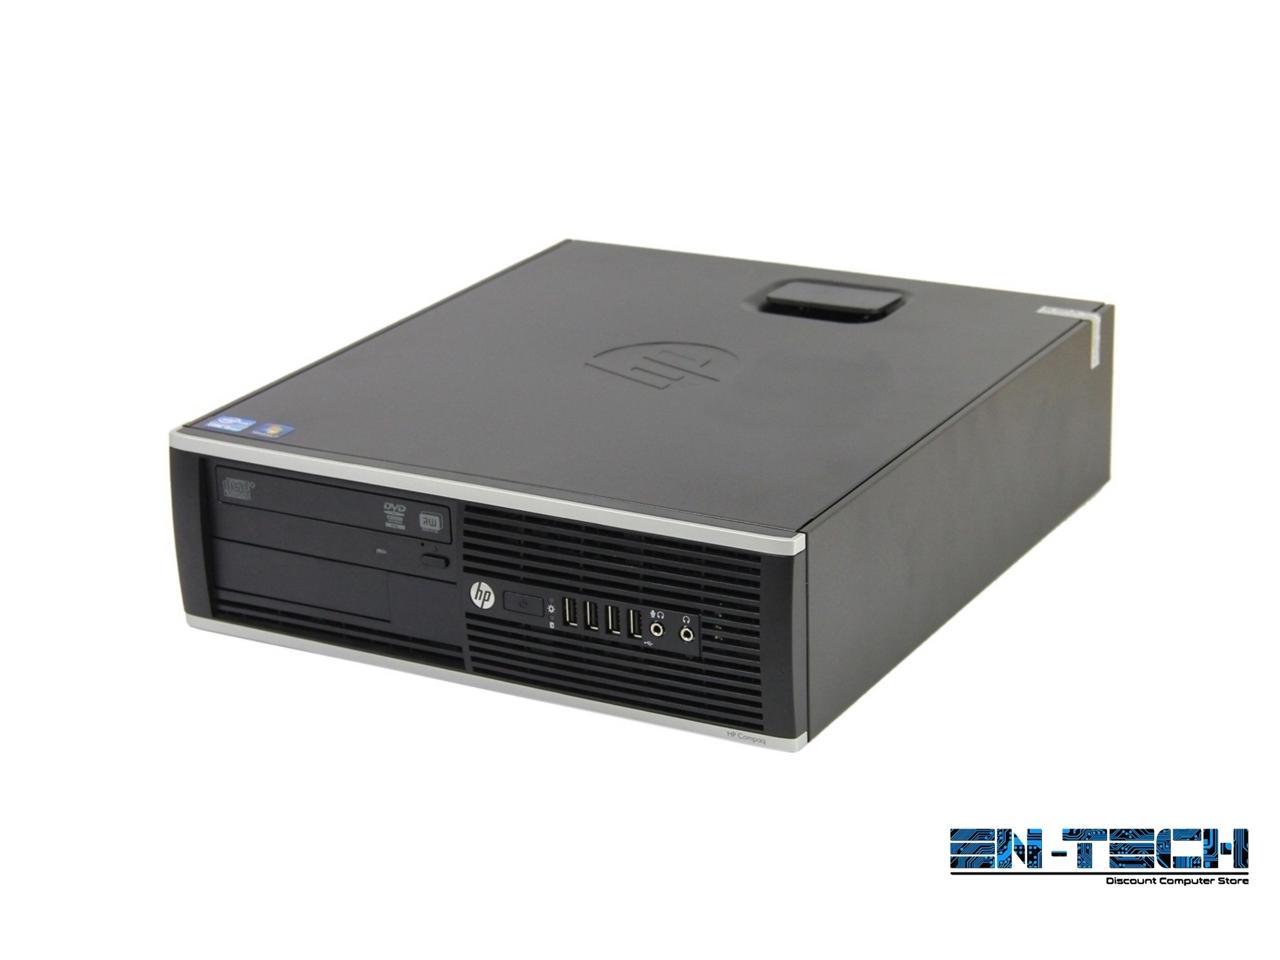 HP Compaq 8300 Elite SFF PC - Intel Core i5 3470 3rd Gen 3.2 GHz 8GB 500GB HDD DVD-RW Windows 10 Pro 64-Bit